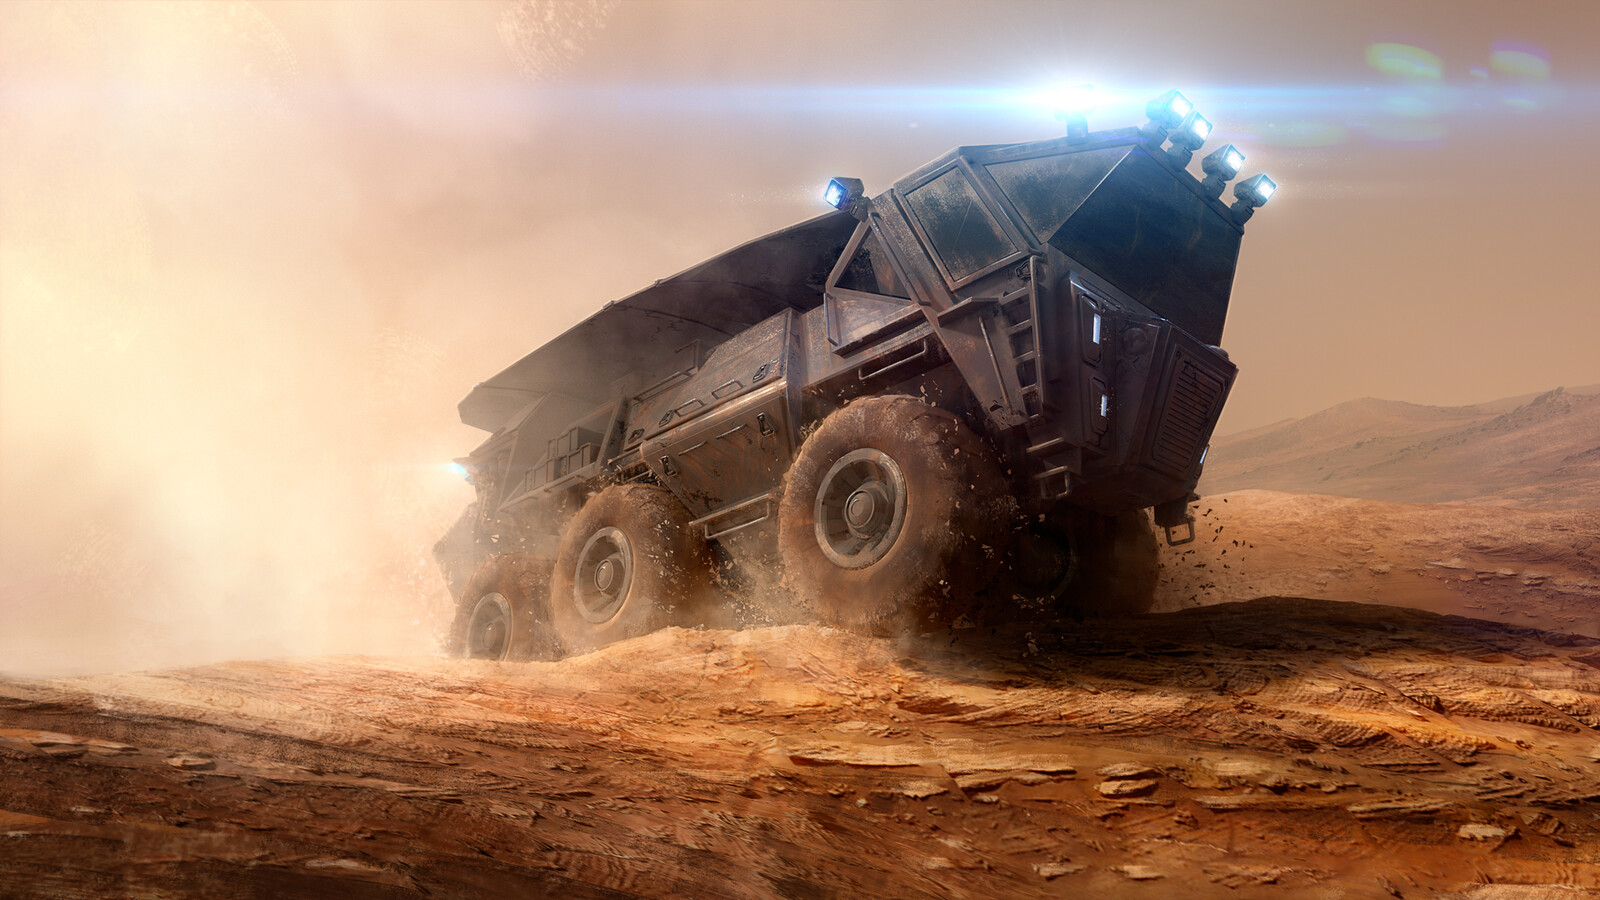 Conqueror | Mars vehicle concept